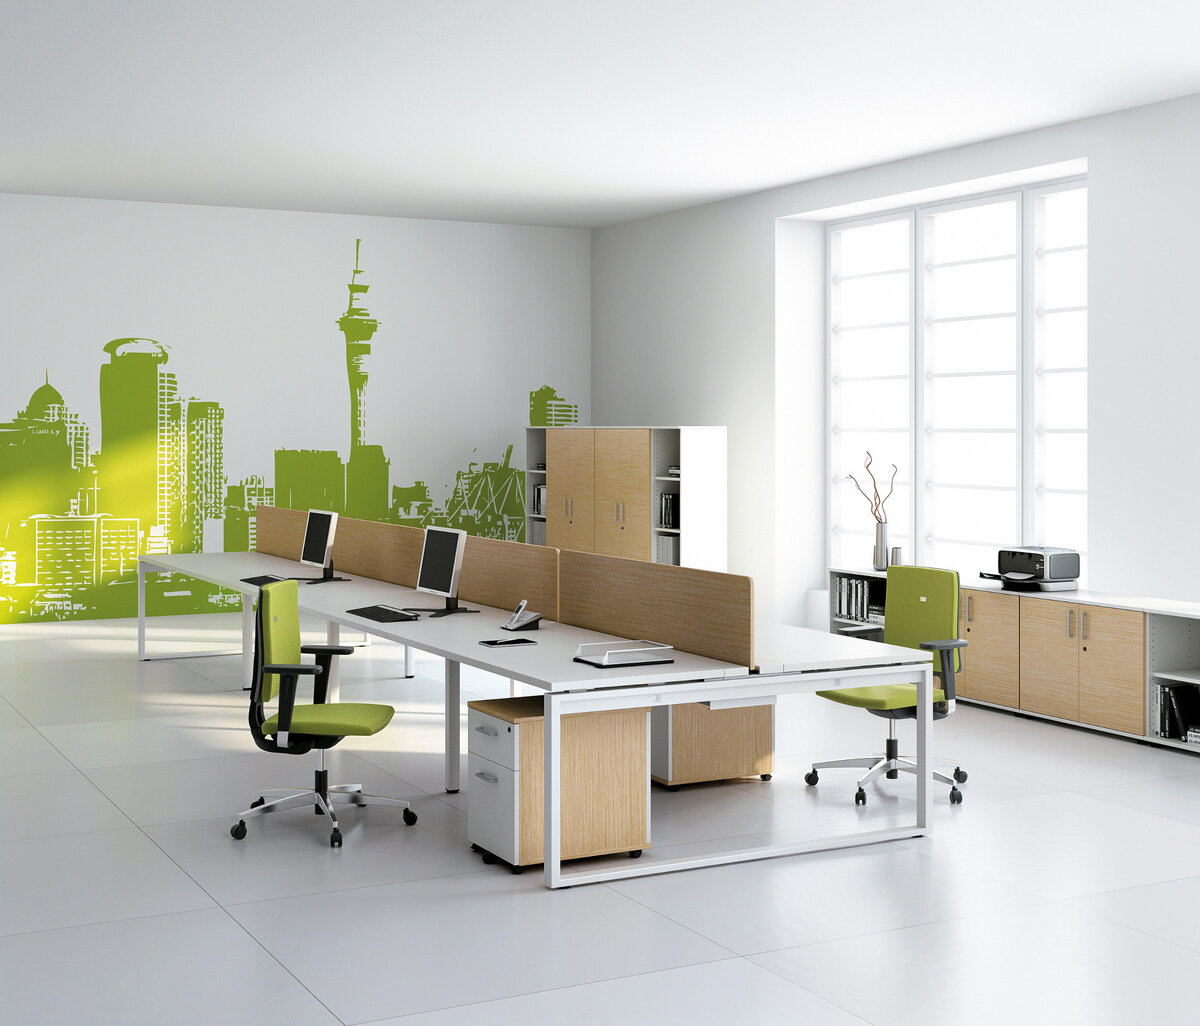 Мебель для опен Спейс помещений. Цветовые решения для офиса опен Спейс. Опен Спейс офис зеленый. Офисный интерьер. Офисов и т д